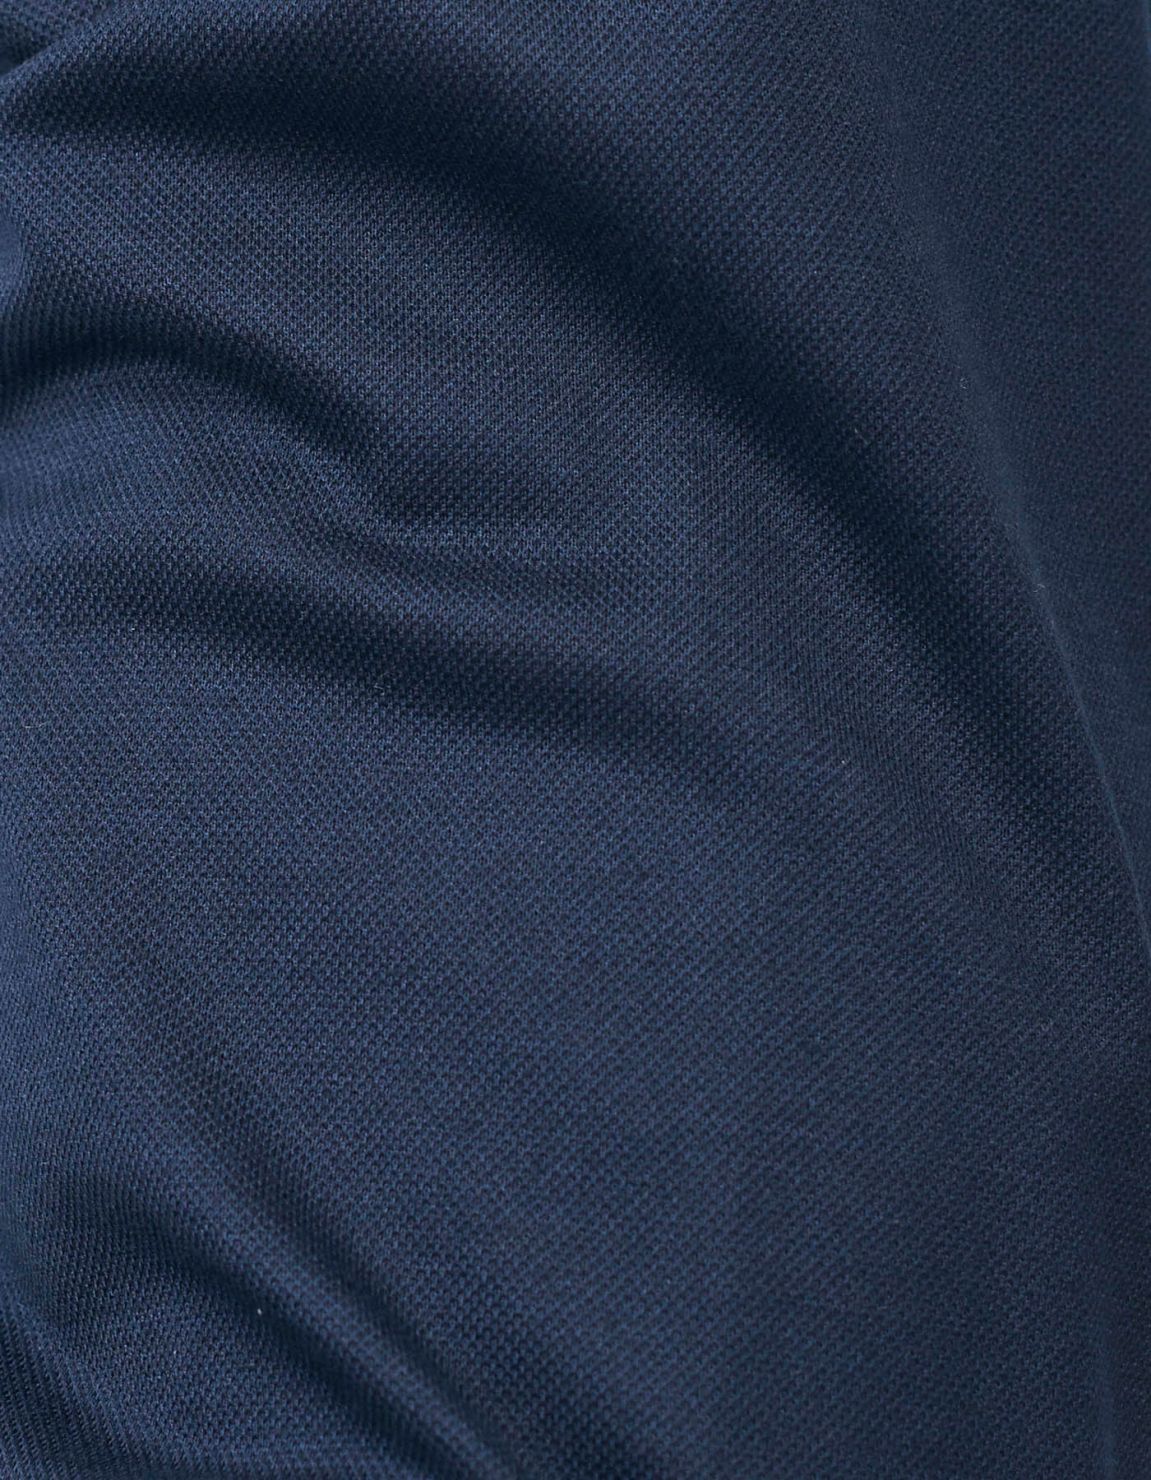 Chemise Col français Unie Piqué Bleu marine Tailor Custom Fit 2